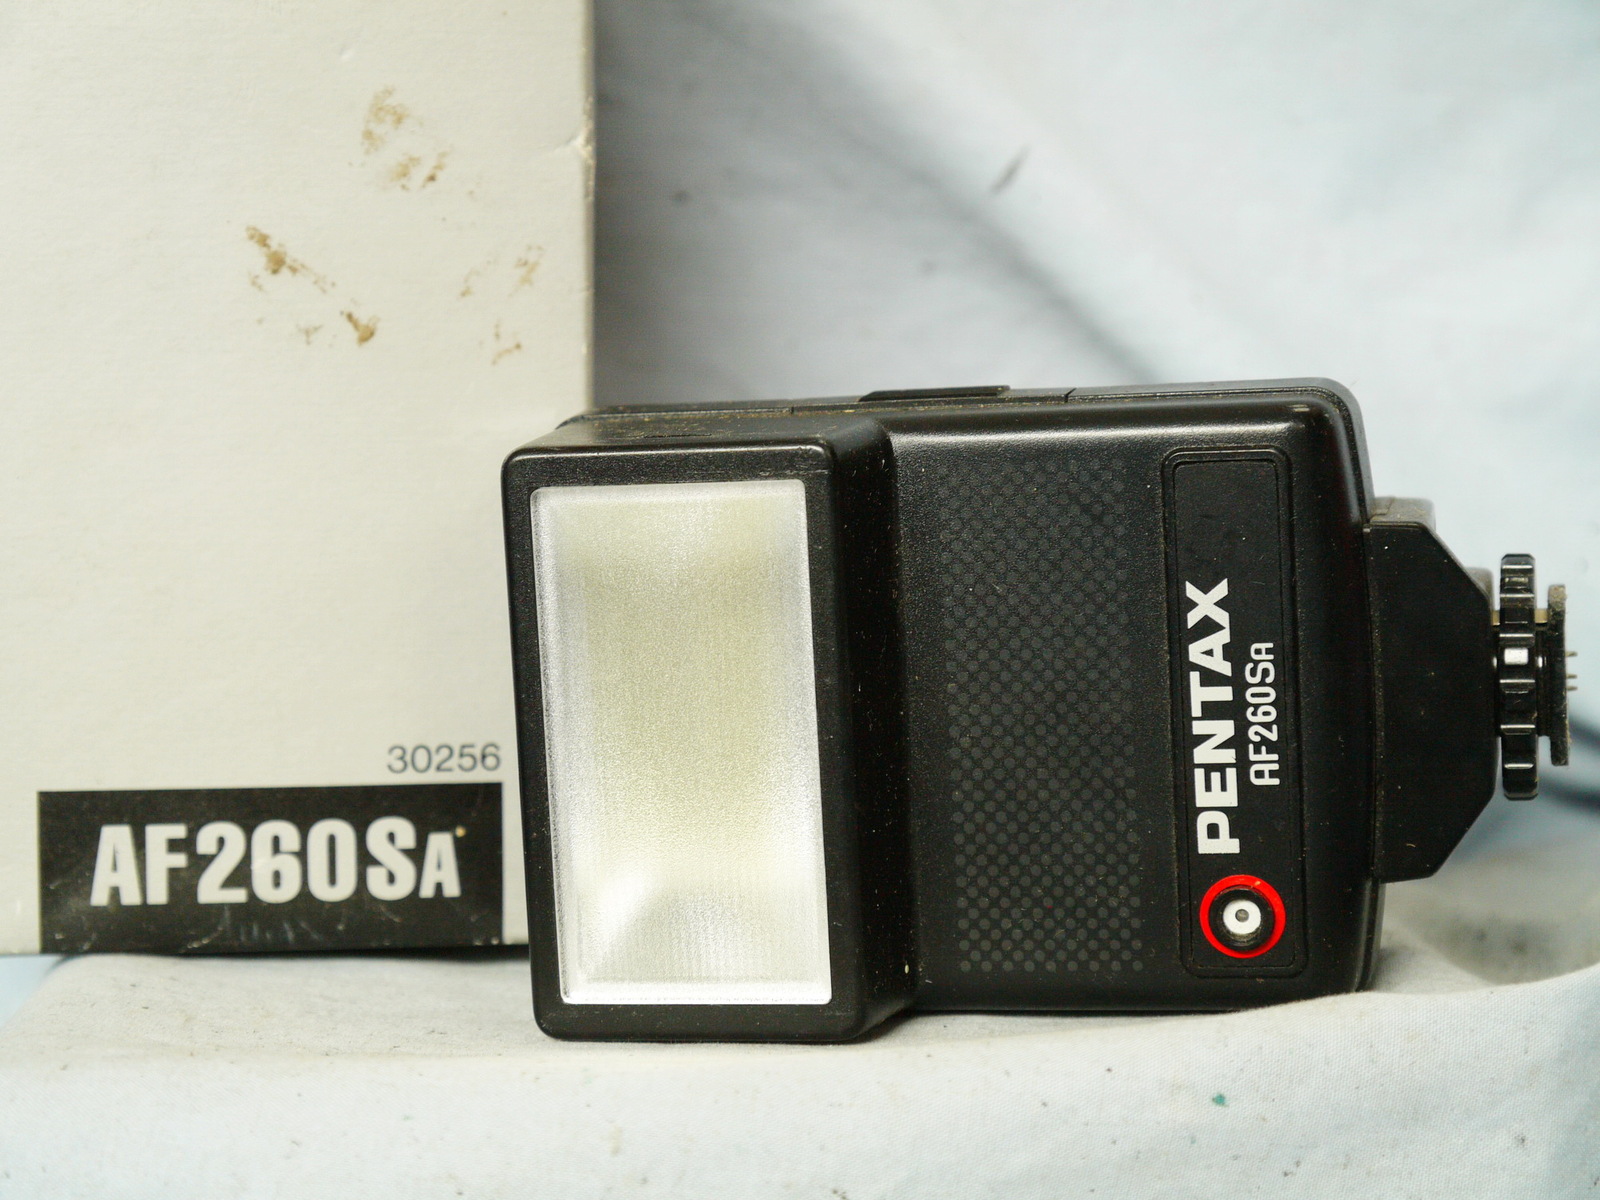 Pentax AF260Sa flash gun for ME-Super P30 P50 Z1 MZ-M Program A camera